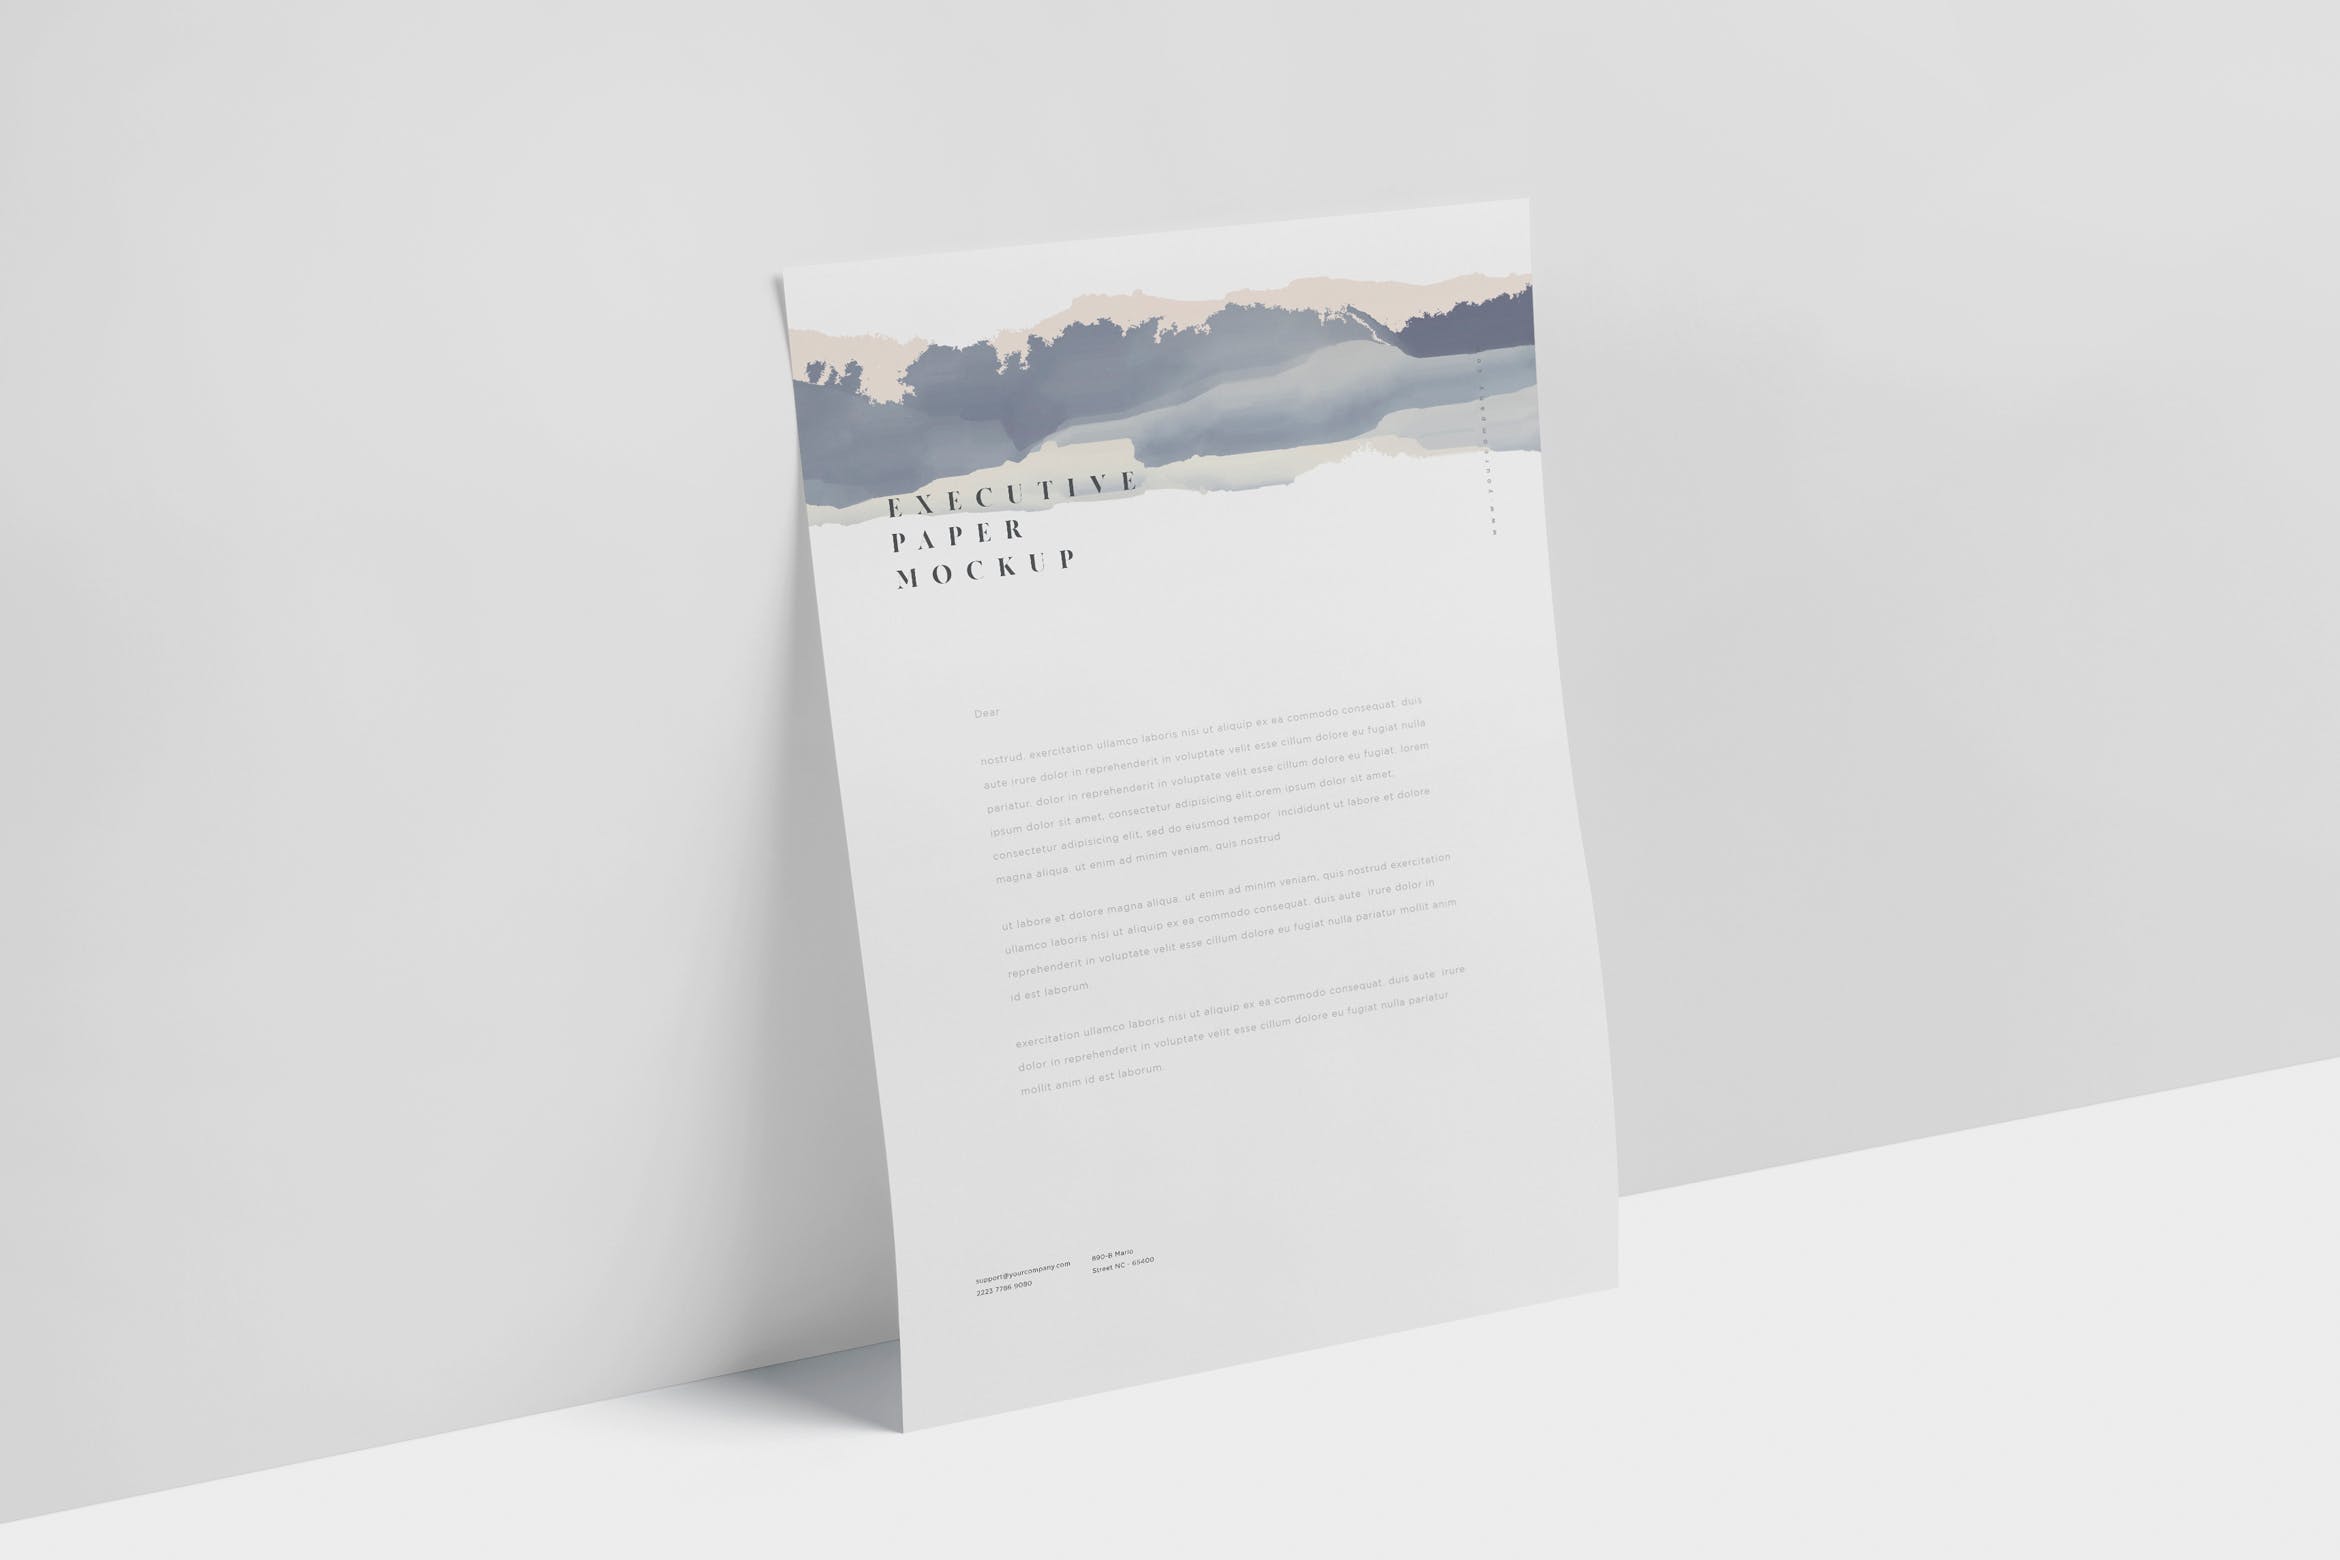 企业宣传单张设计效果图样机素材库精选 Executive Paper Mockup – 7×10 Inch Size插图